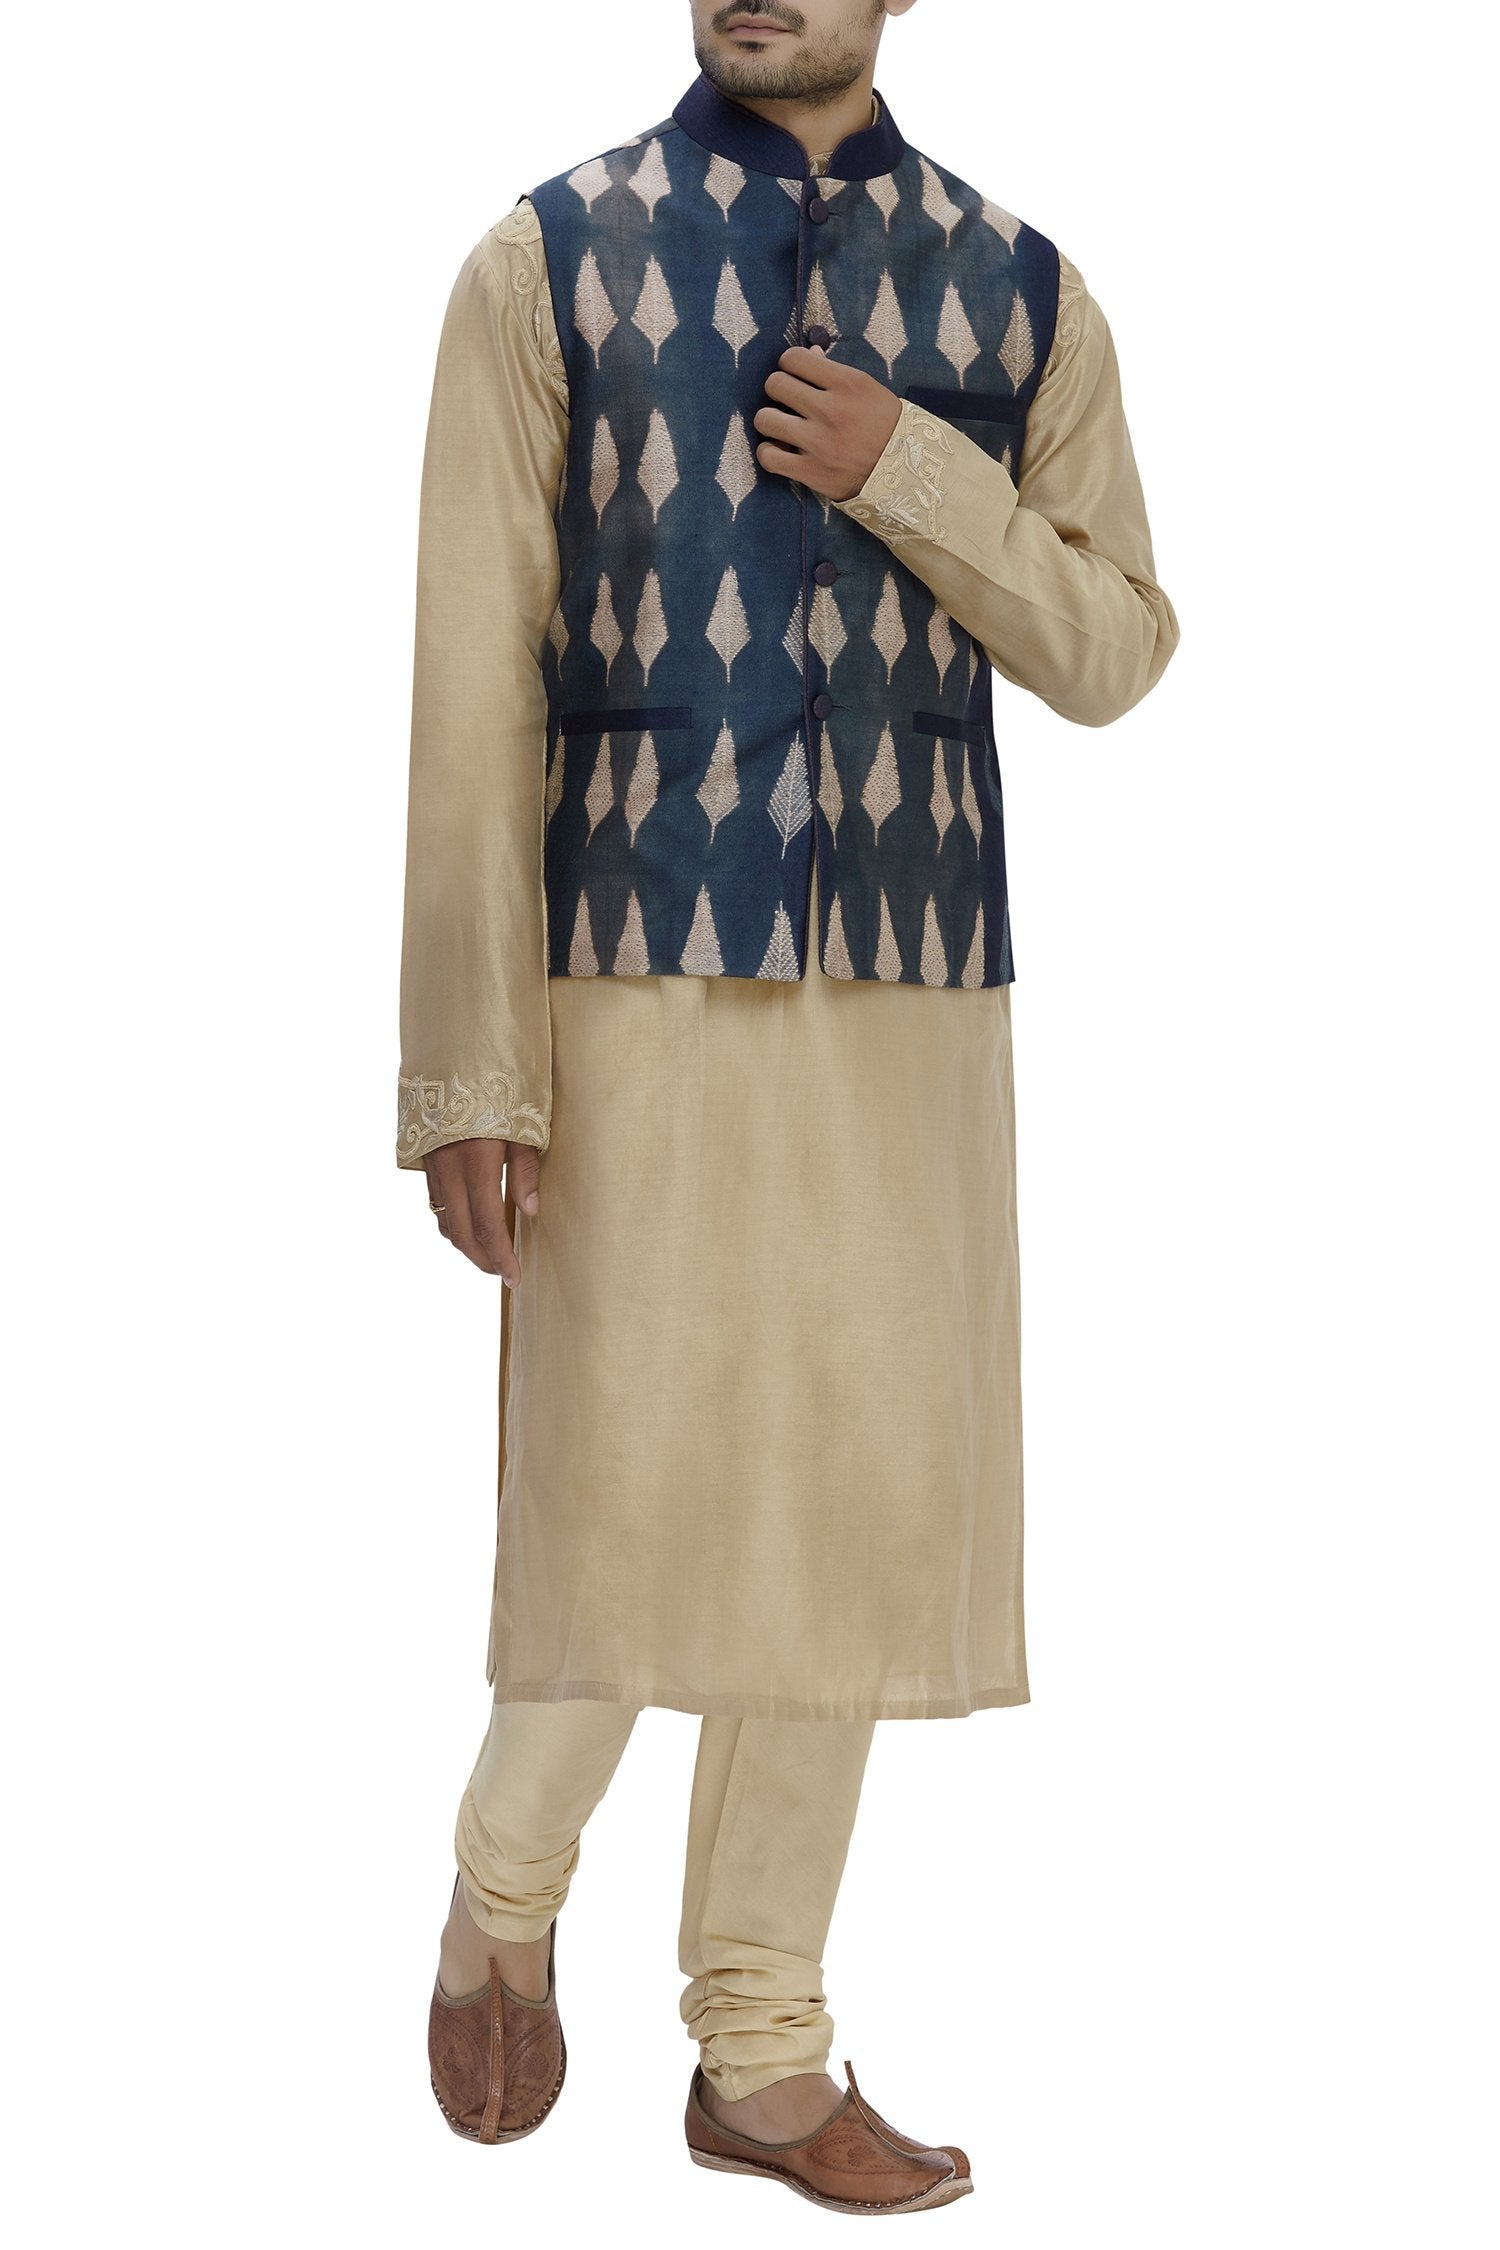 Blue Shibori Silk Nehru Jacket Bandhgala Waistcoat Bandi